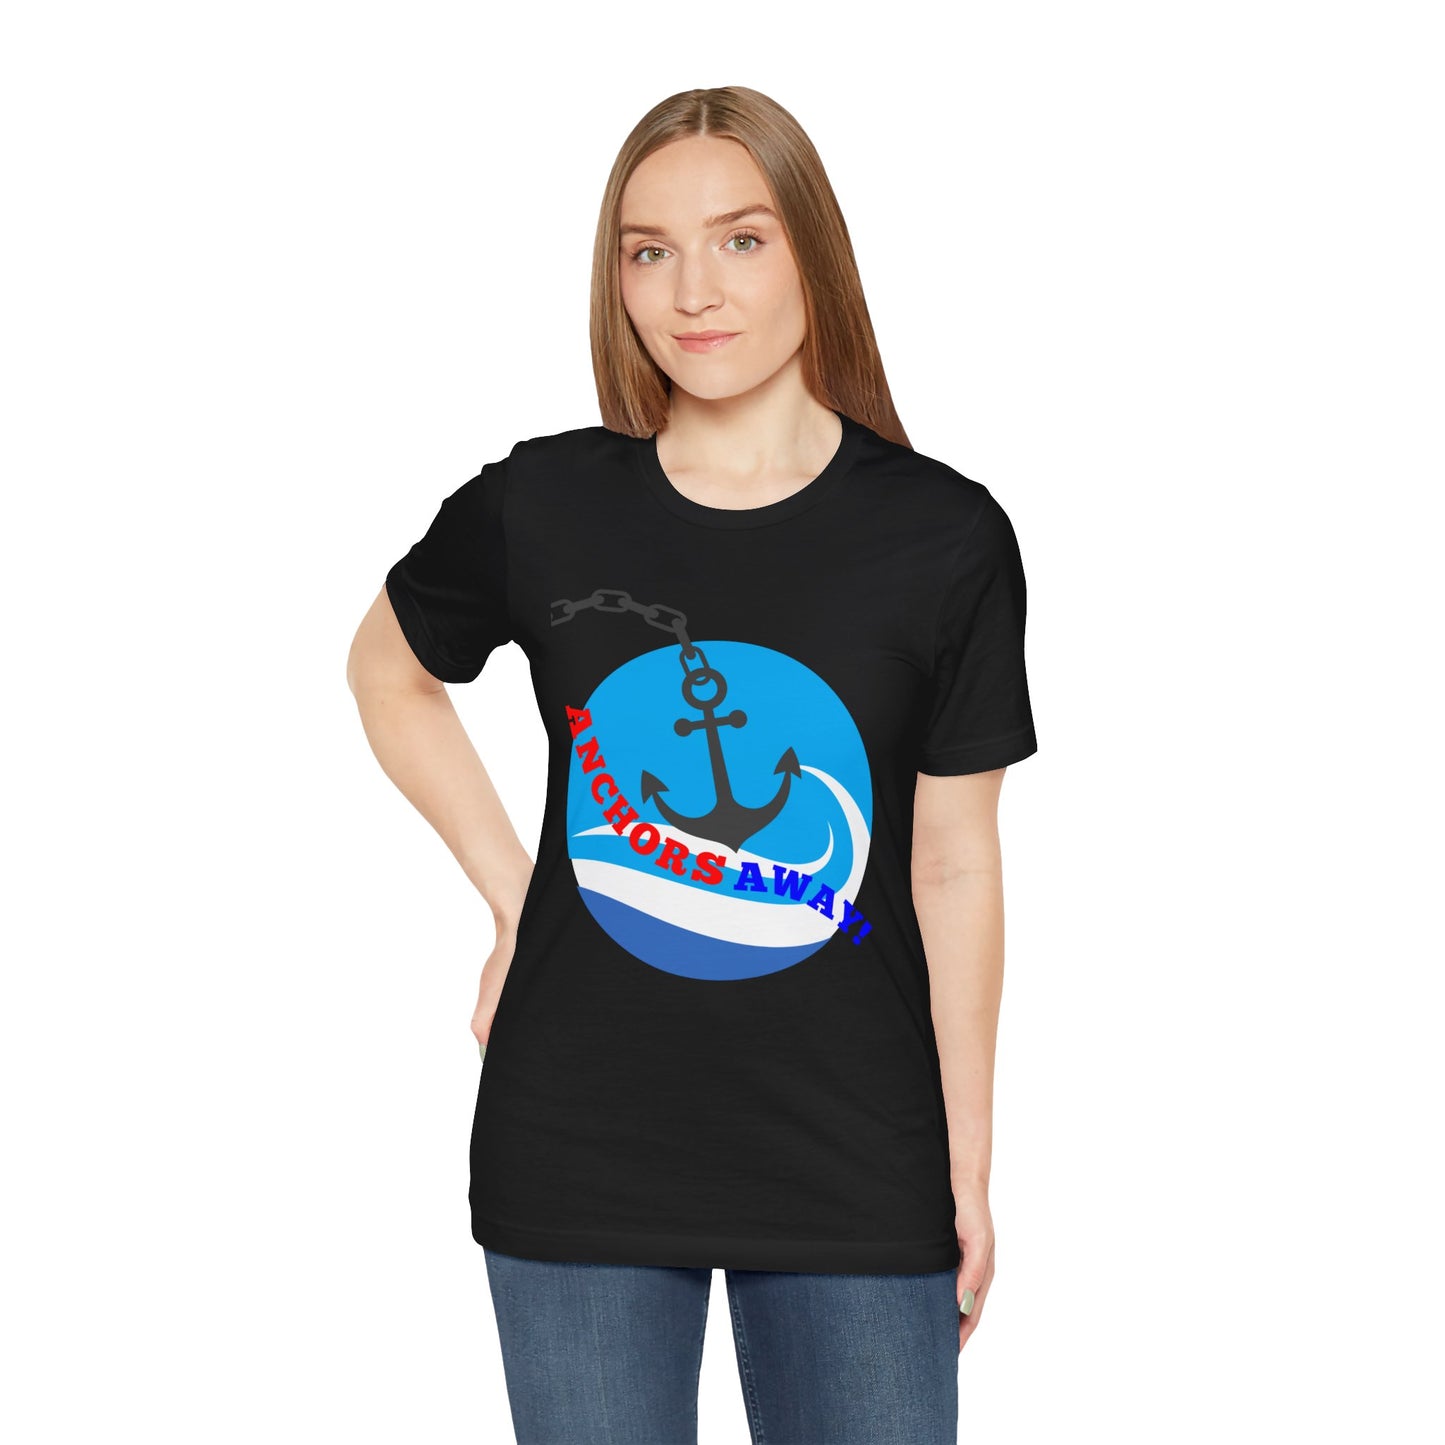 Anchors Away! - T-Shirt